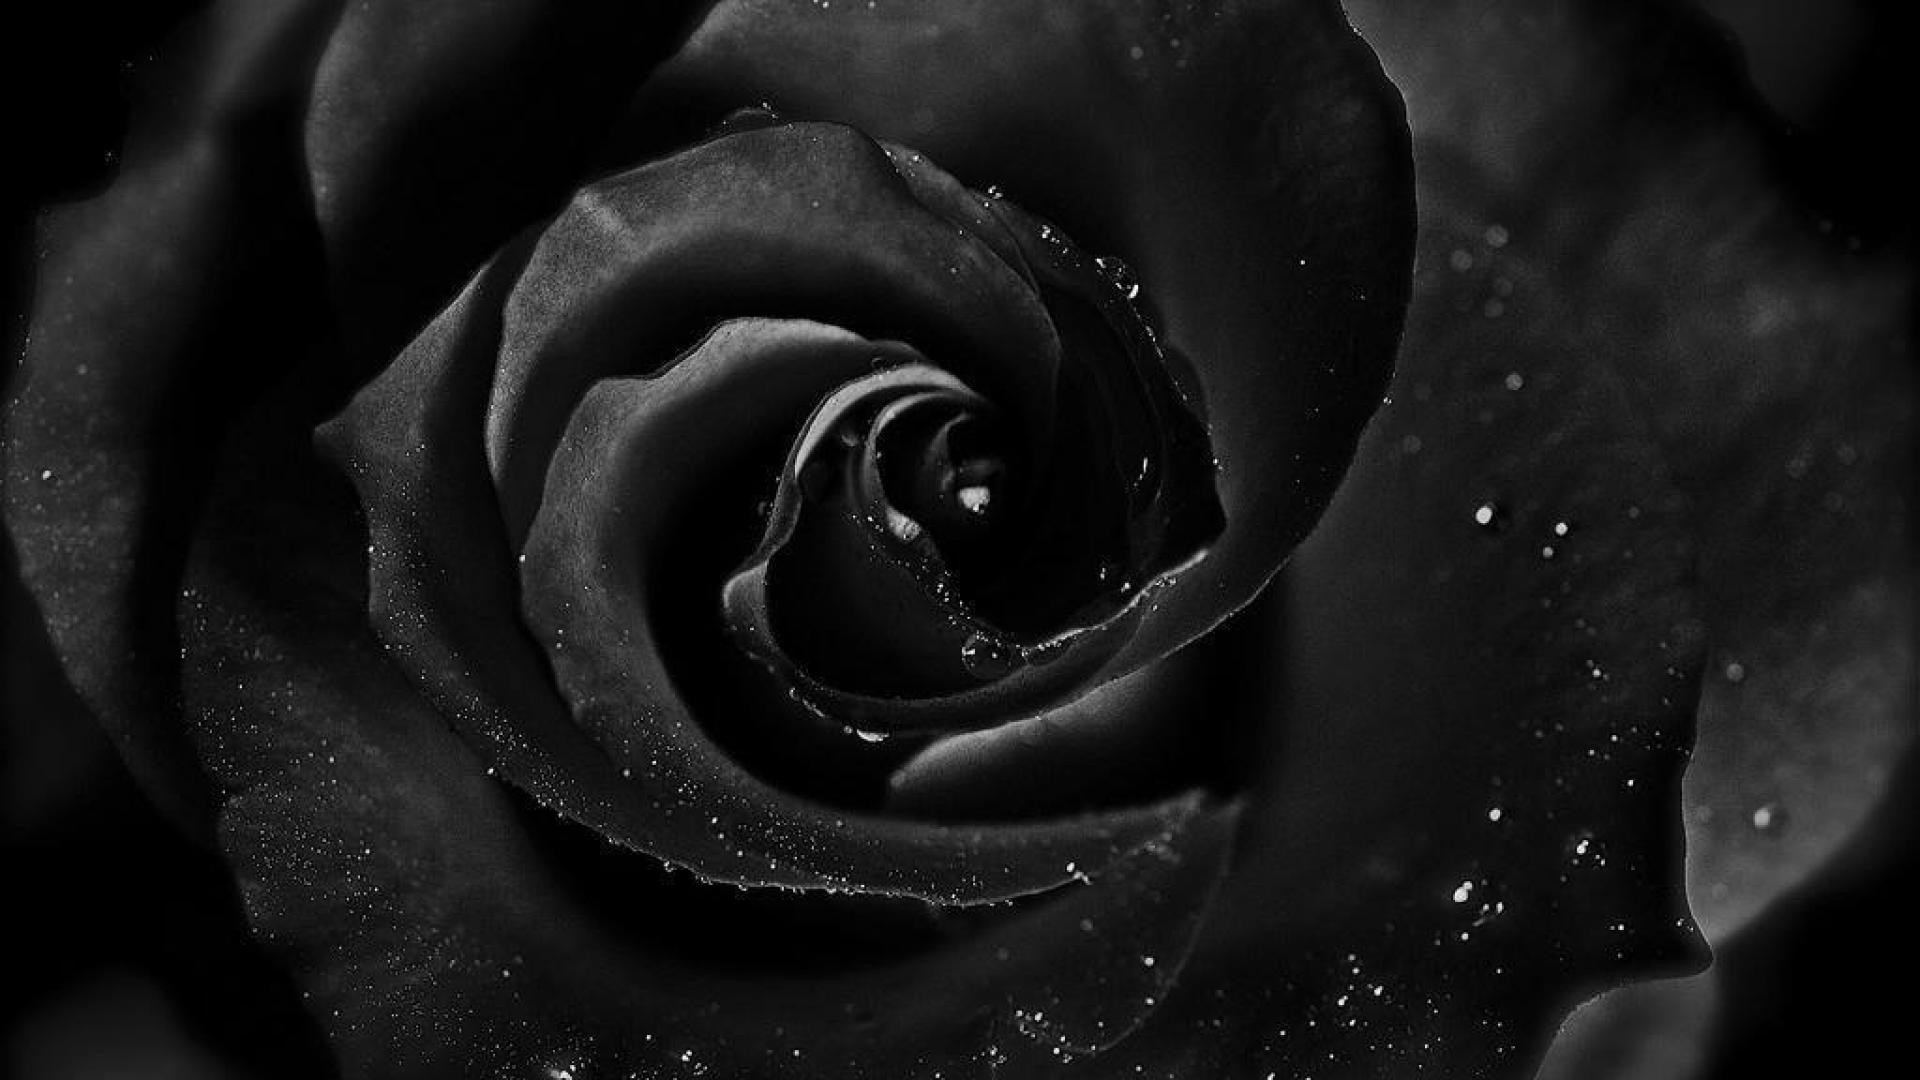 fond d'écran rose noir et blanc,rose,roses de jardin,noir,photographie monochrome,noir et blanc